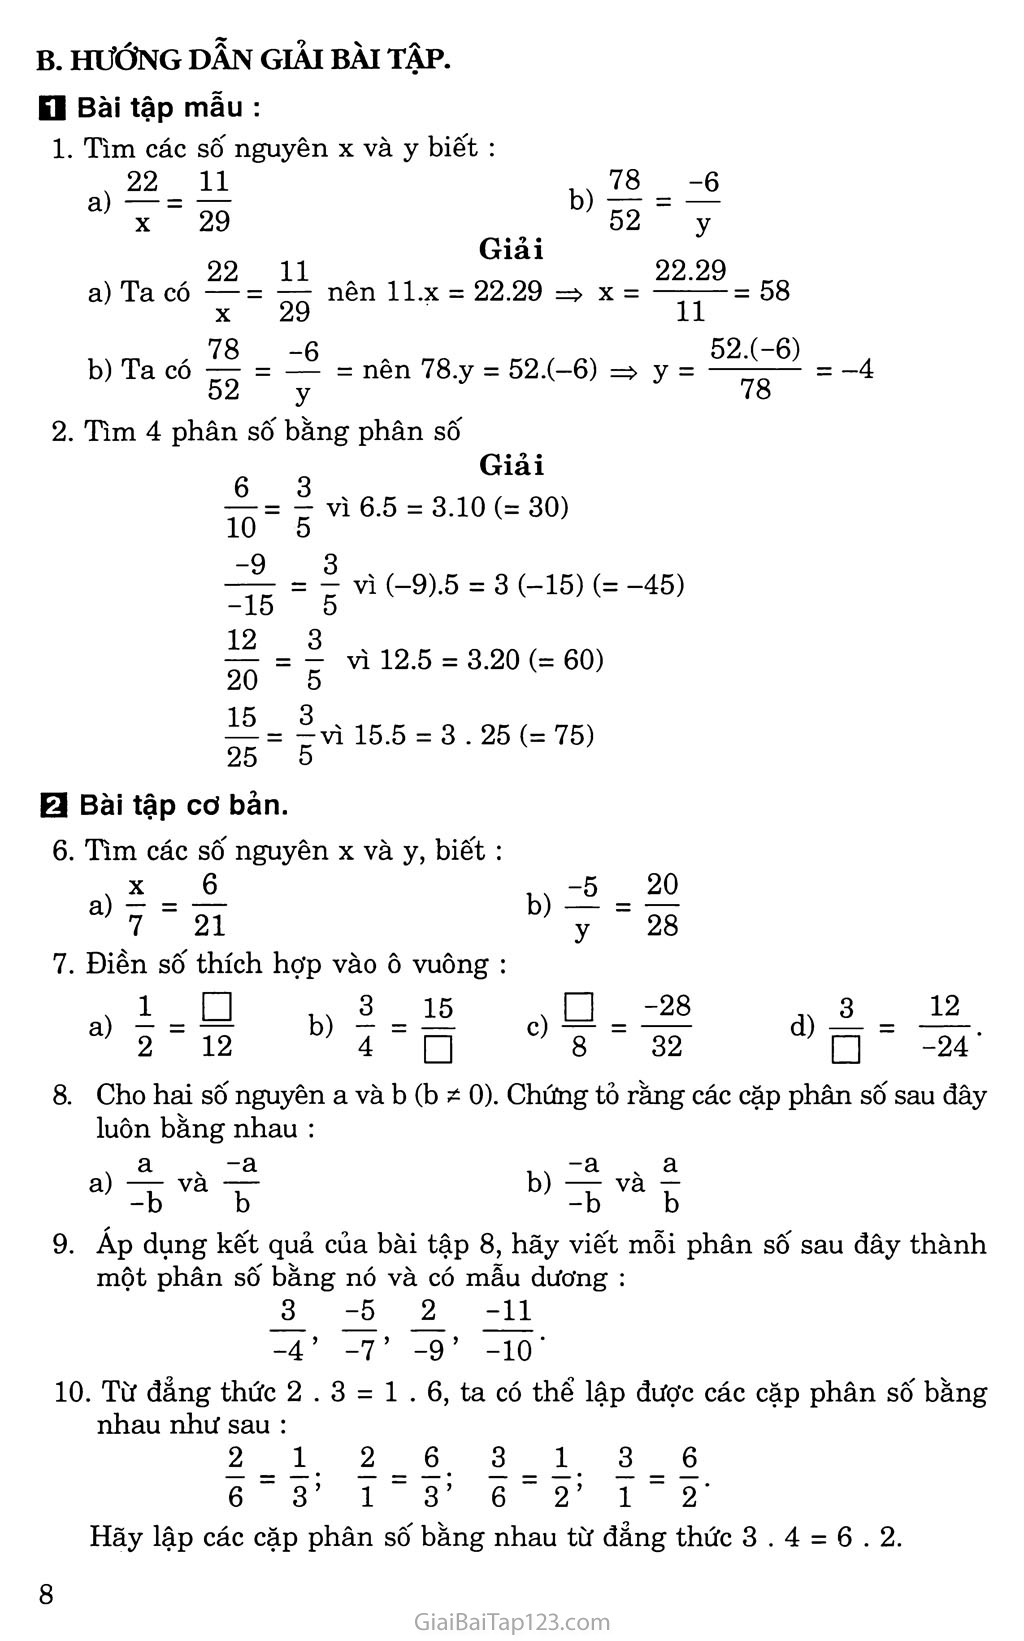 Bài 2. Phân số bằng nhau trang 2